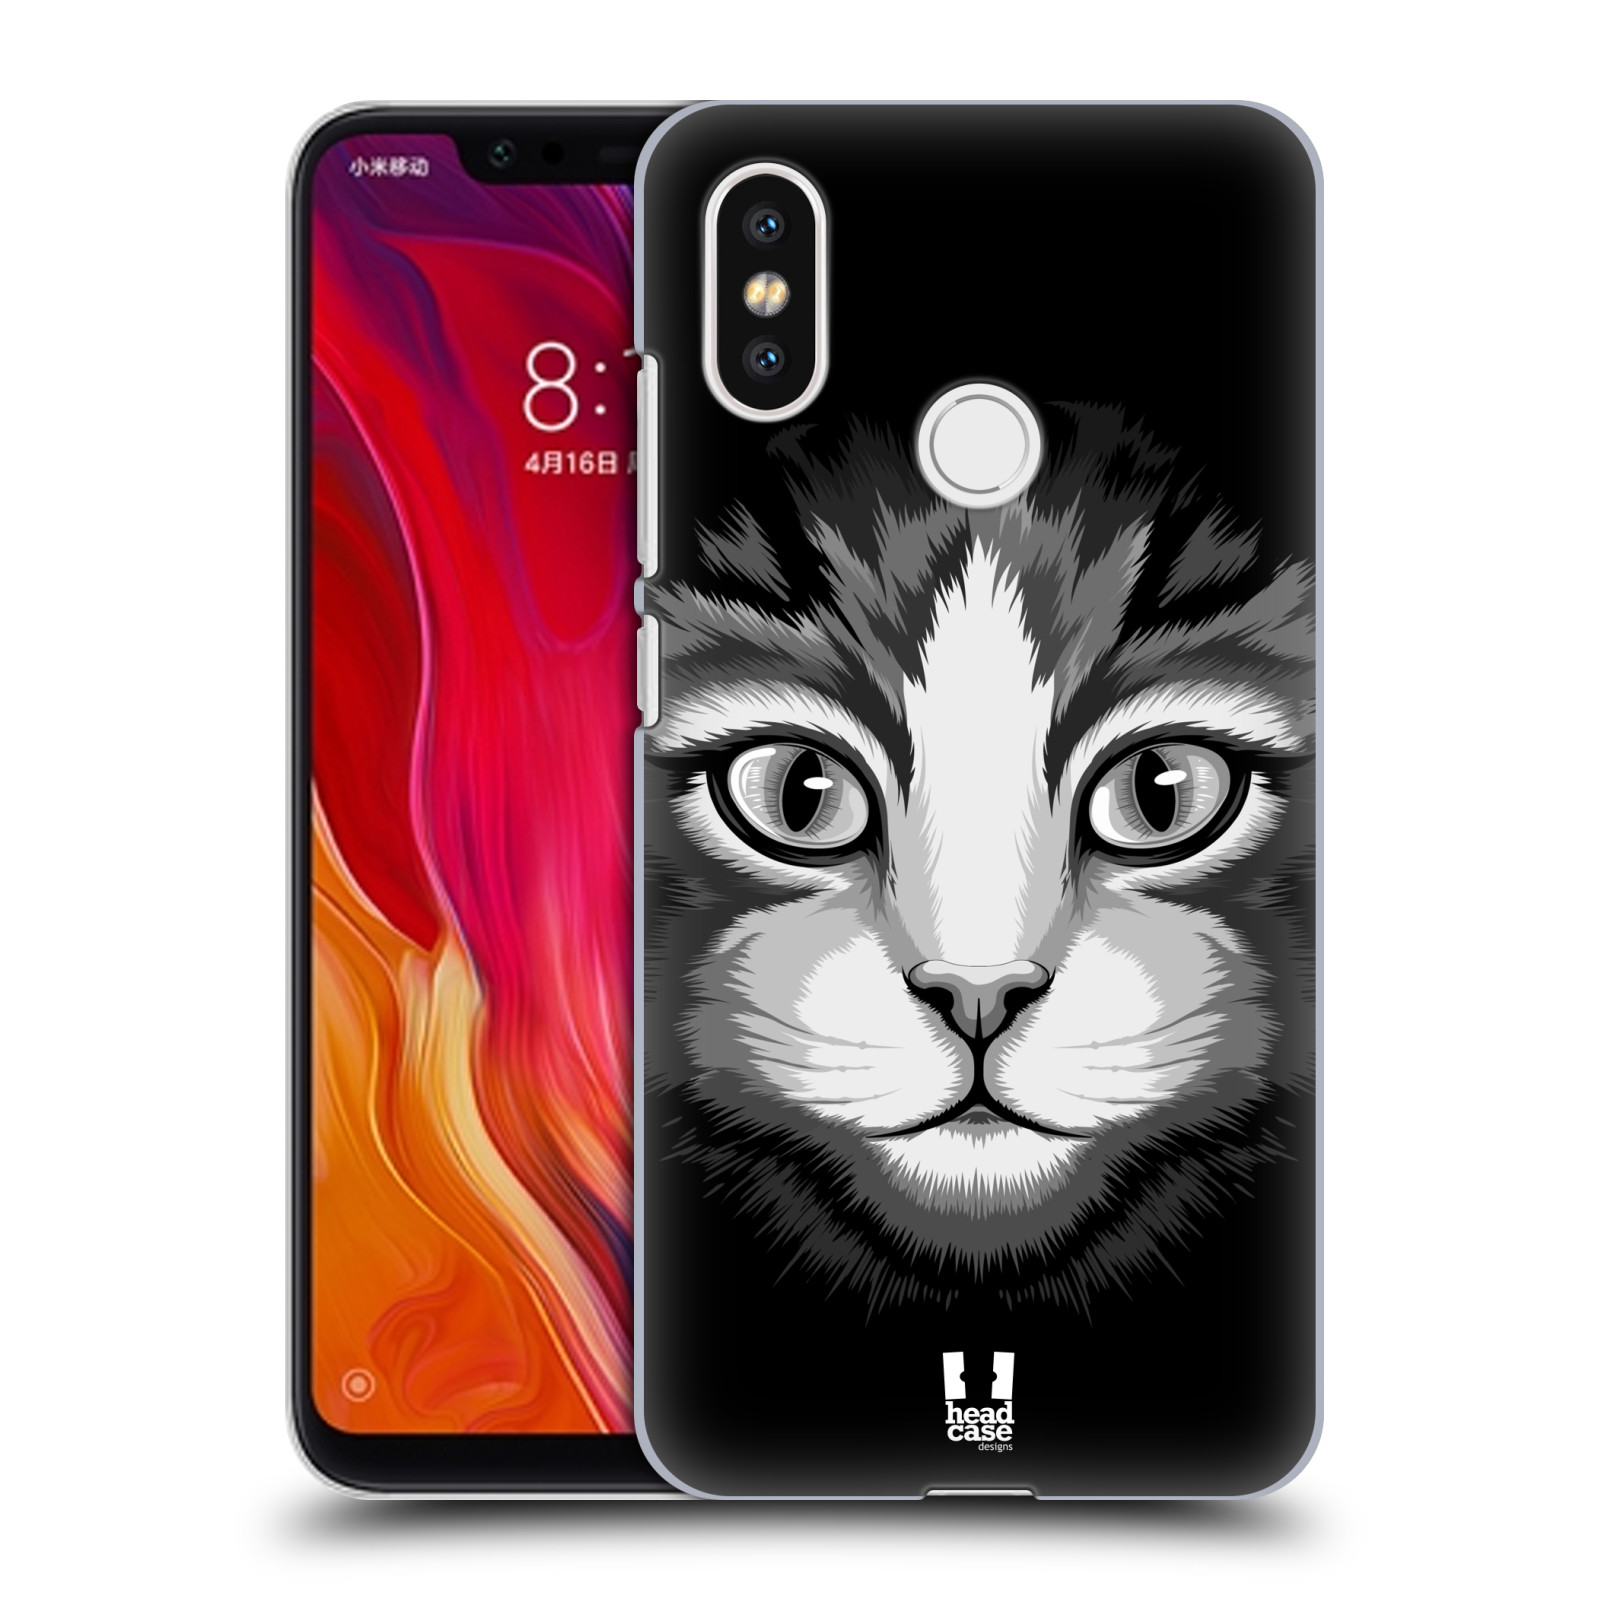 HEAD CASE plastový obal na mobil Xiaomi Mi 8 vzor Zvíře kreslená tvář 2 kočička